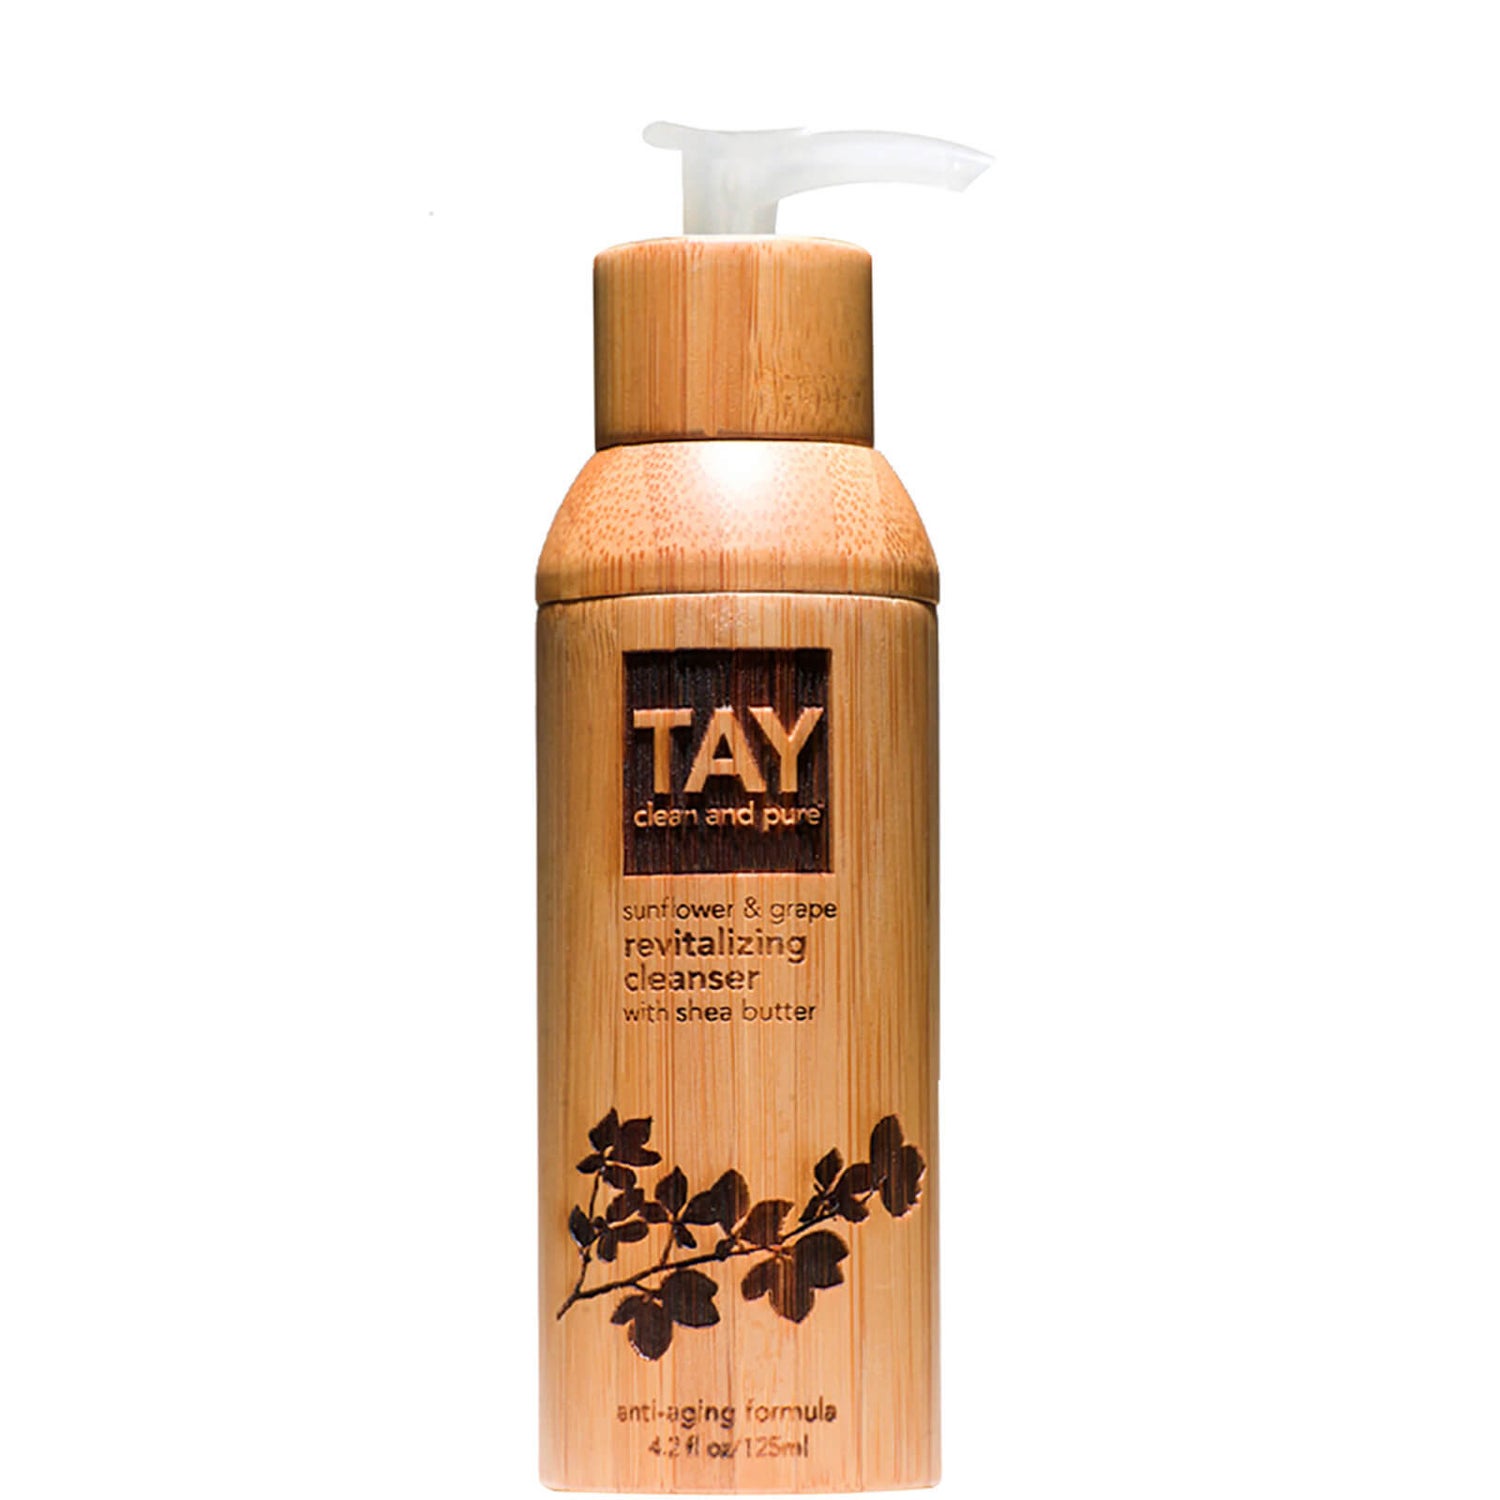 Tay Skincare Sunflower & Grape Revitalizing Cleanser